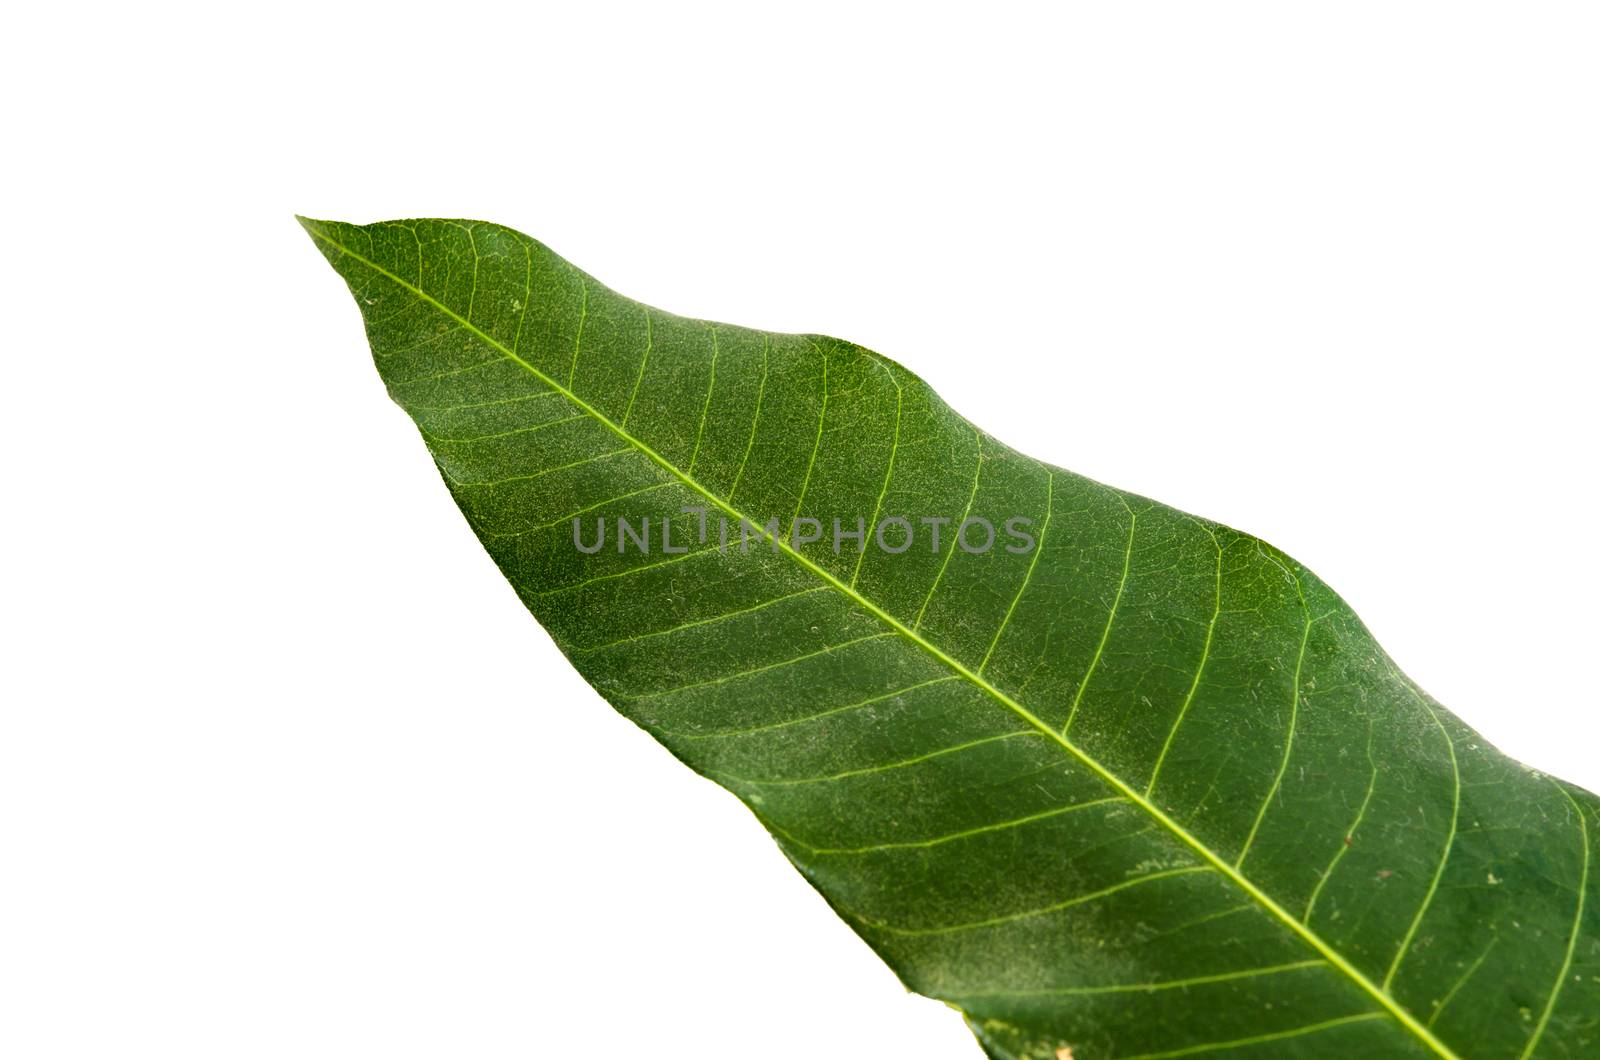 Mango leaves isolated on white the background image.